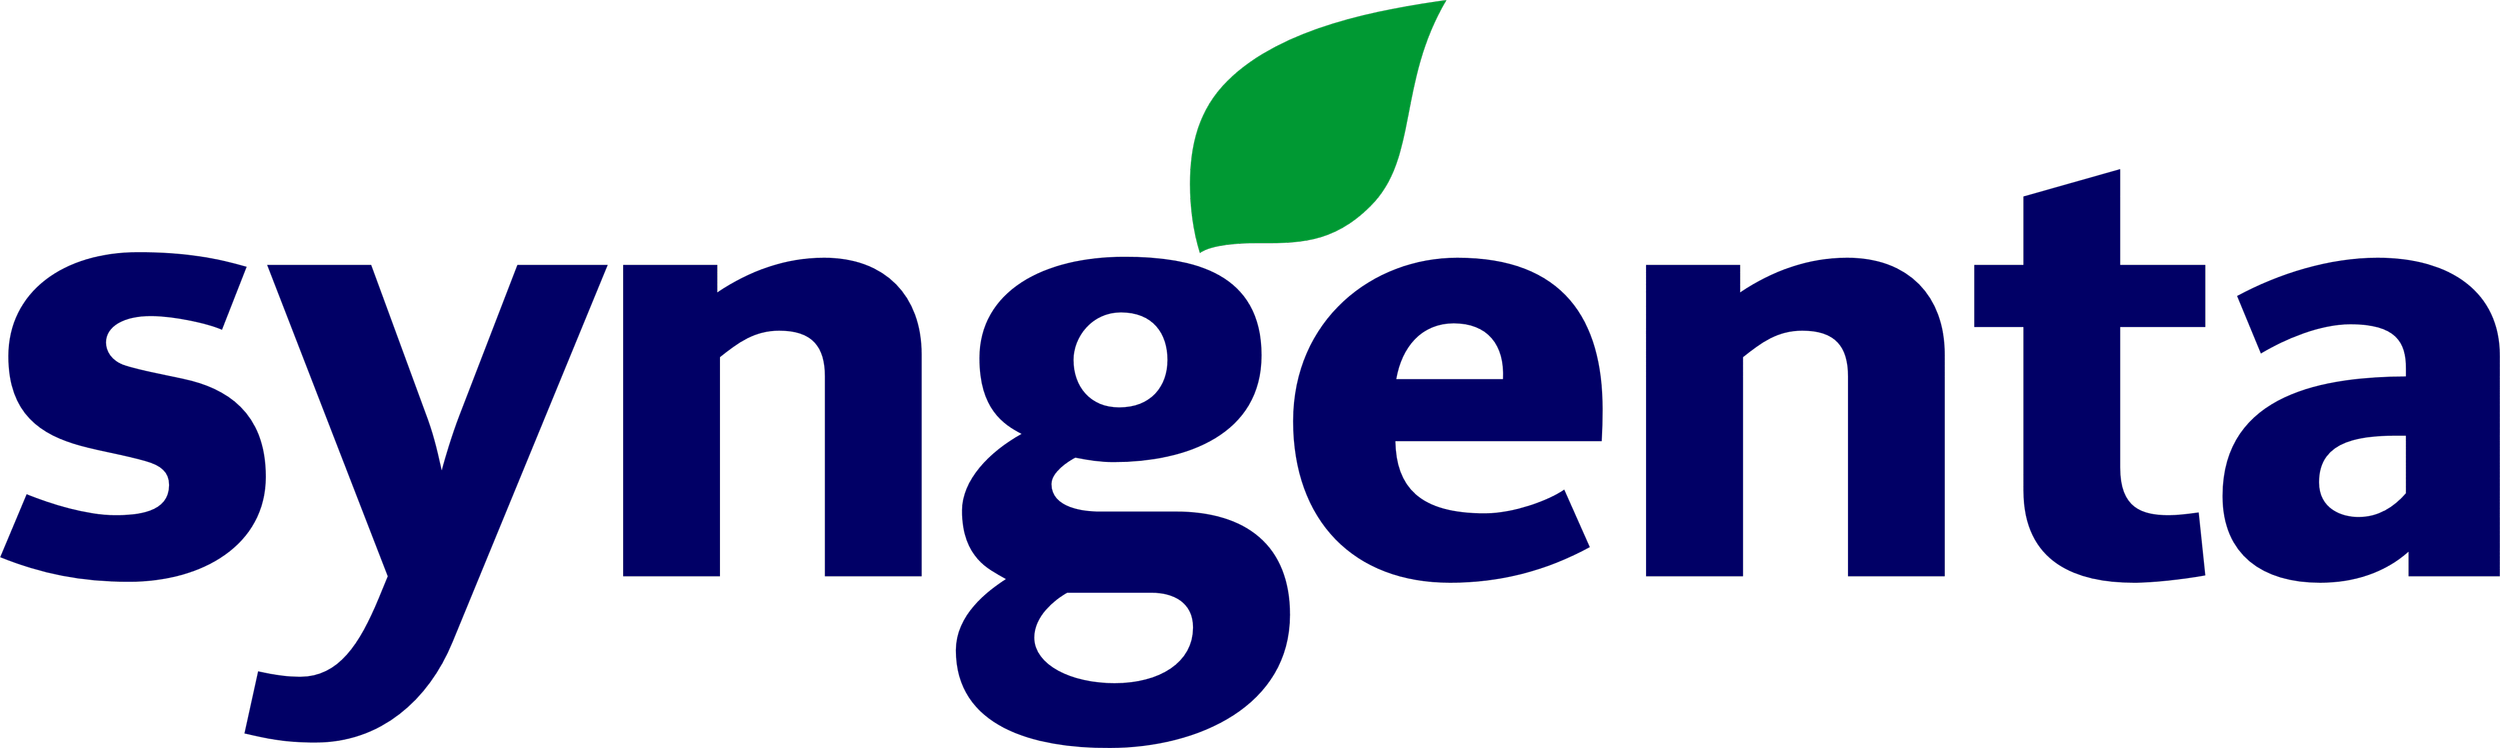 syngenta_logo.png